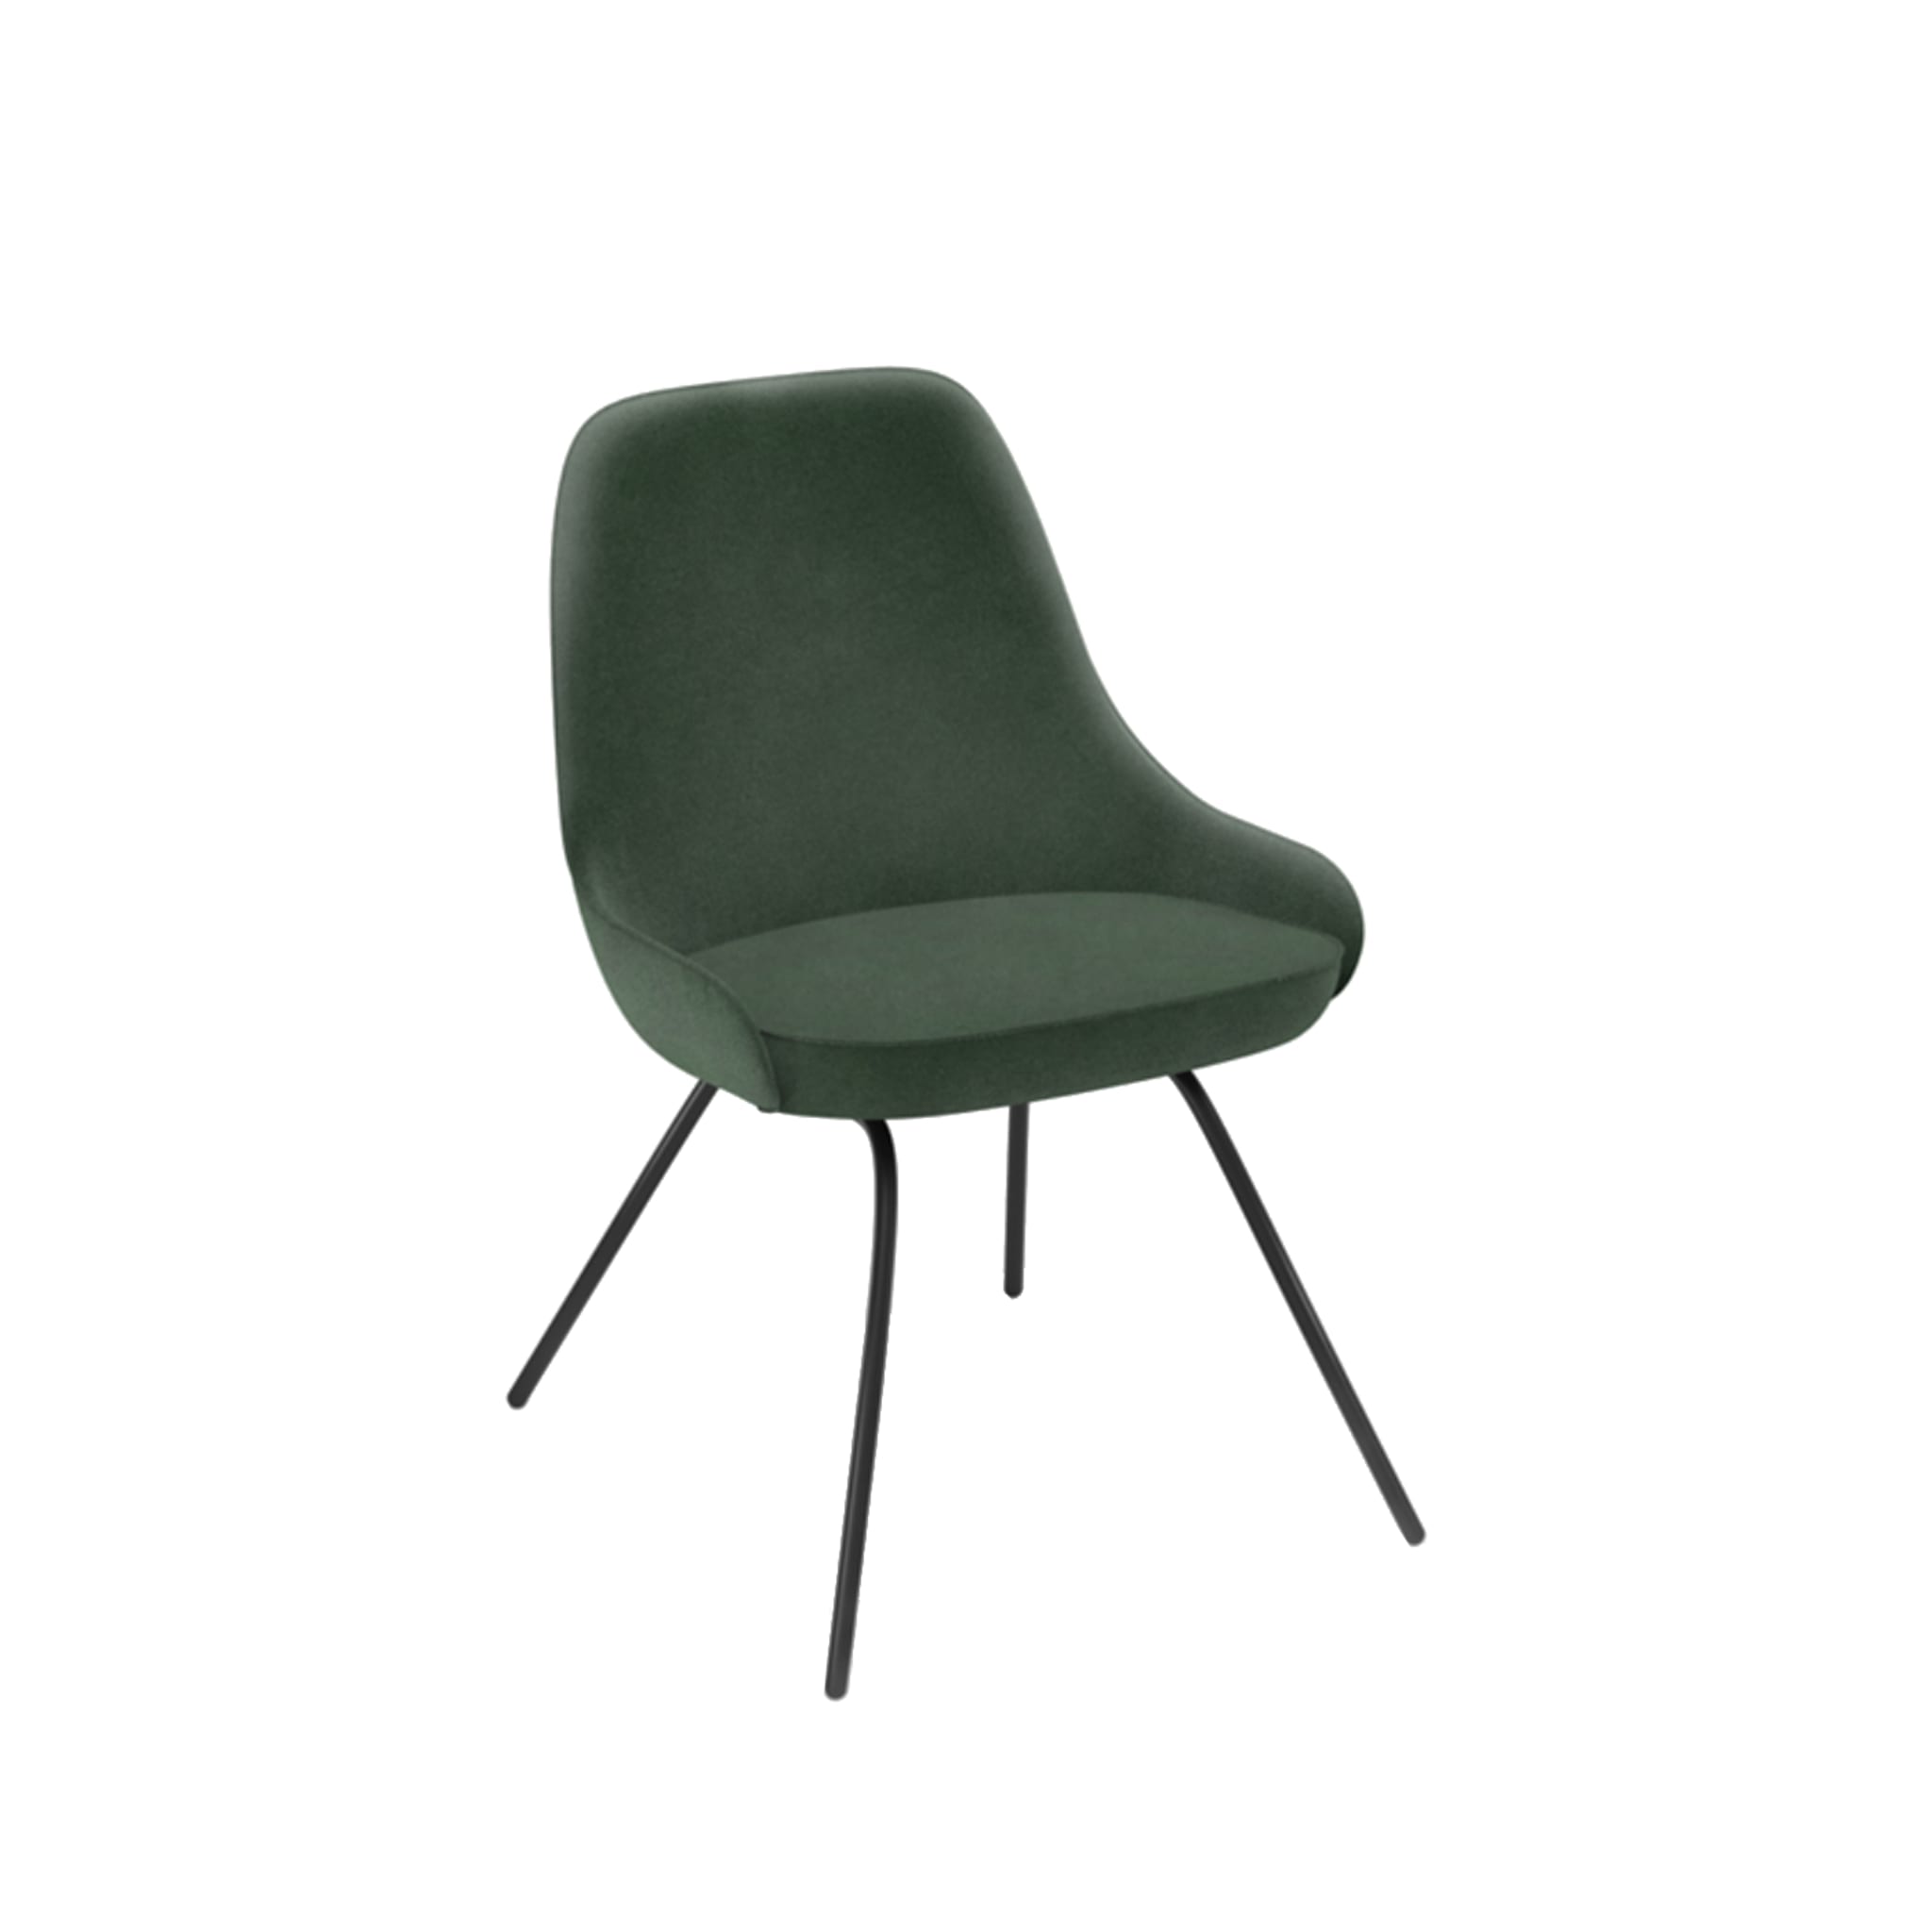 Eyre Green Chair - Main view